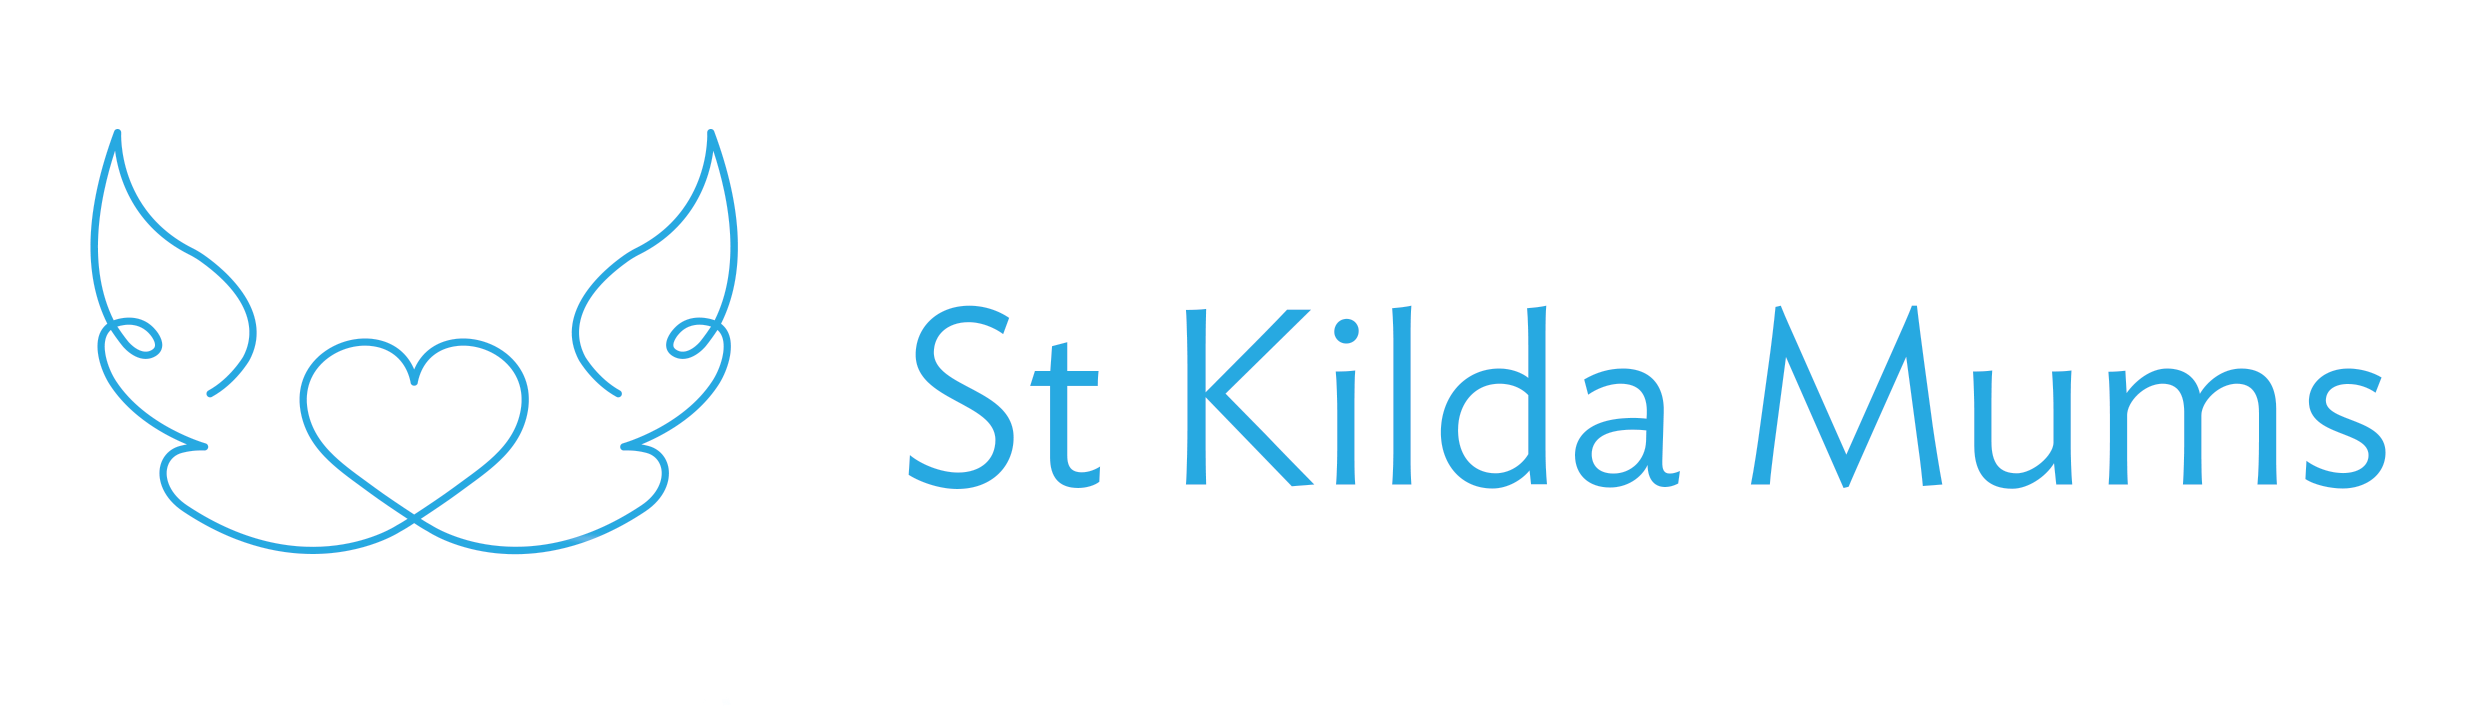 St Kilda Mums logo